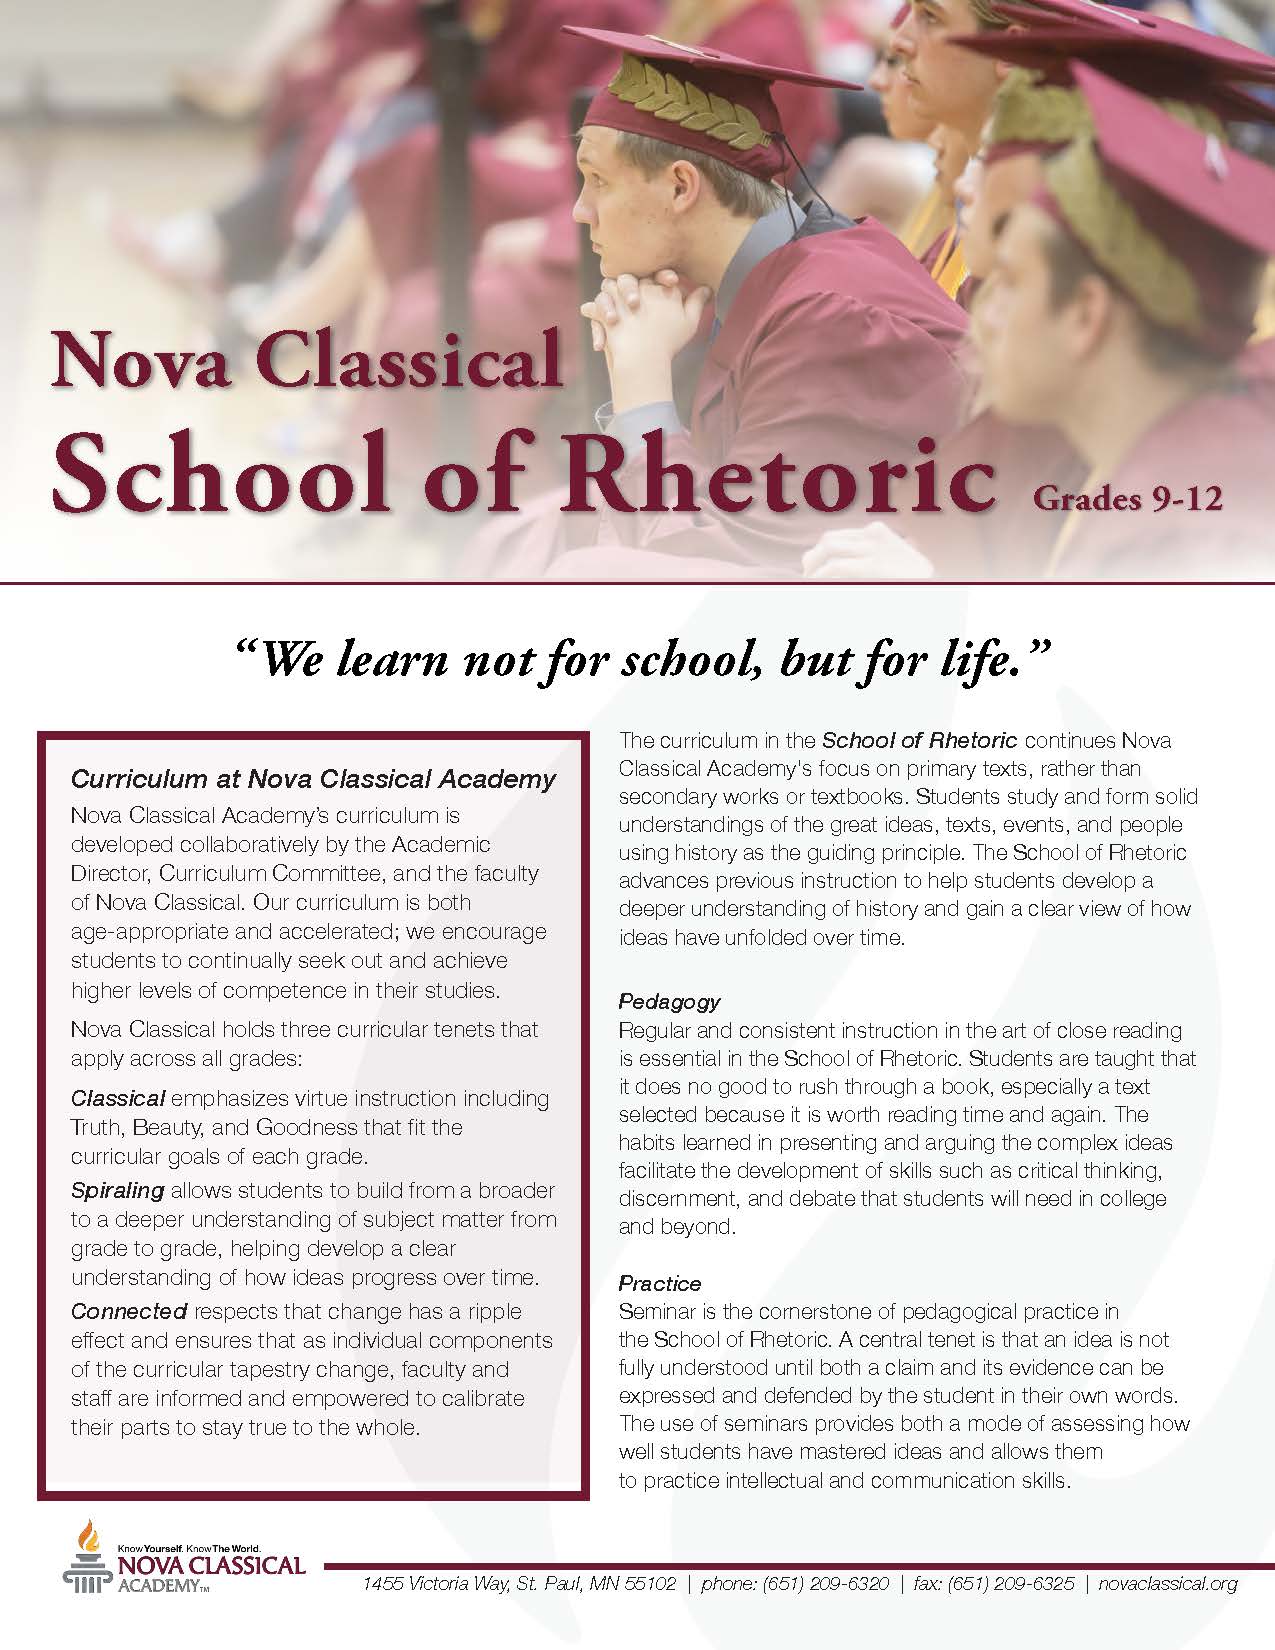 Nova Classical School of Rhetoric - Grades 9-12